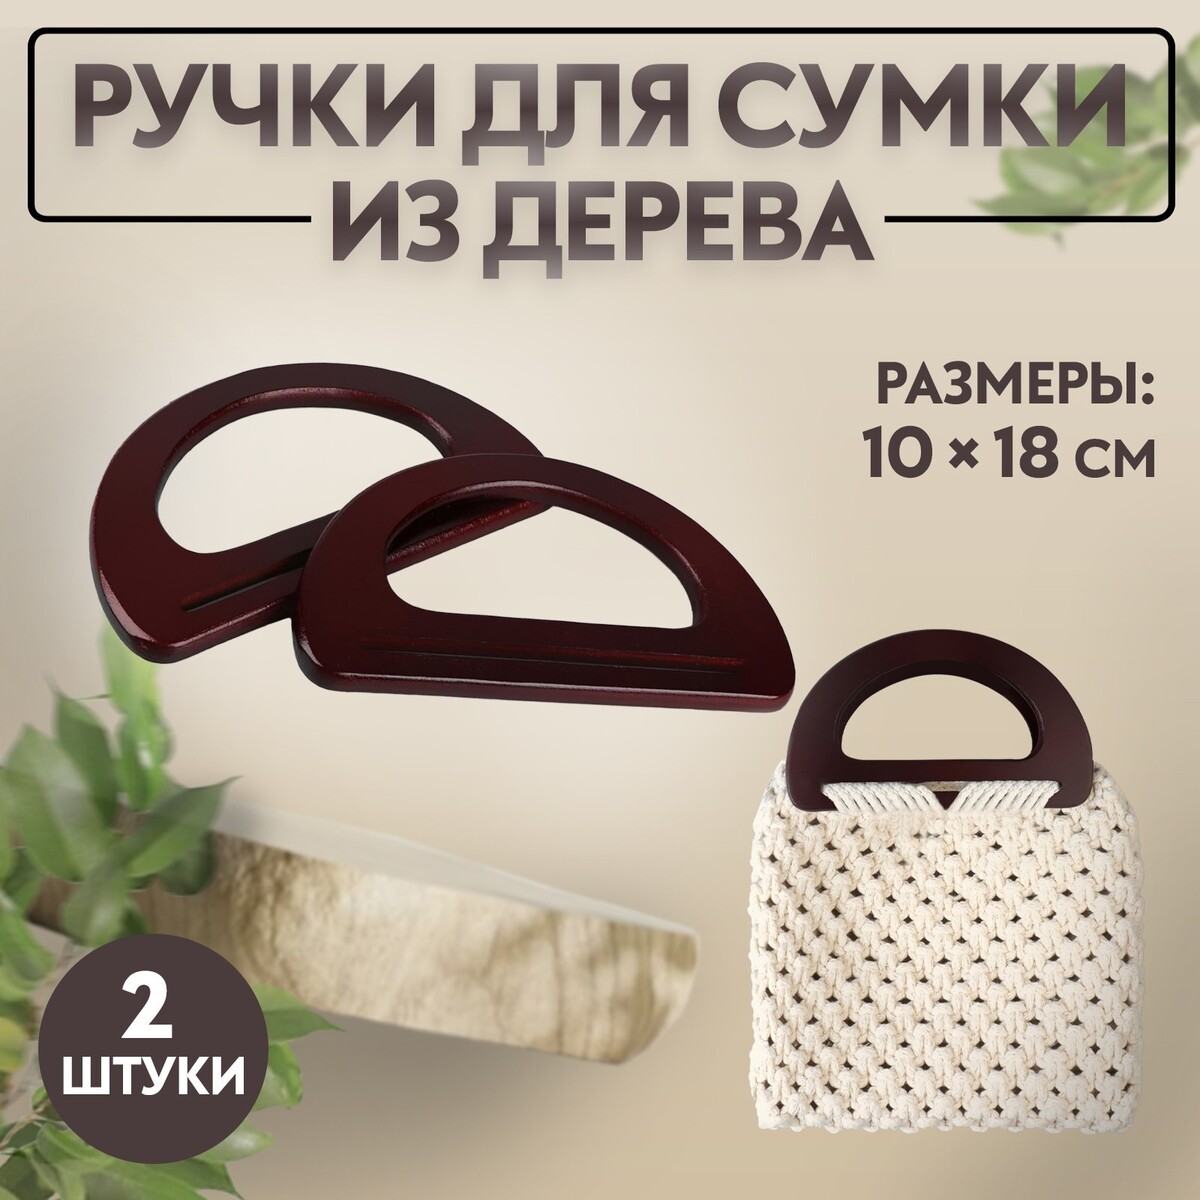 Ручки для сумки деревянные, 10 × 18 см, 2 шт, цвет коричневый ручки для сумки деревянные плетеные d 10 2 12 5 см 2 шт коричневый